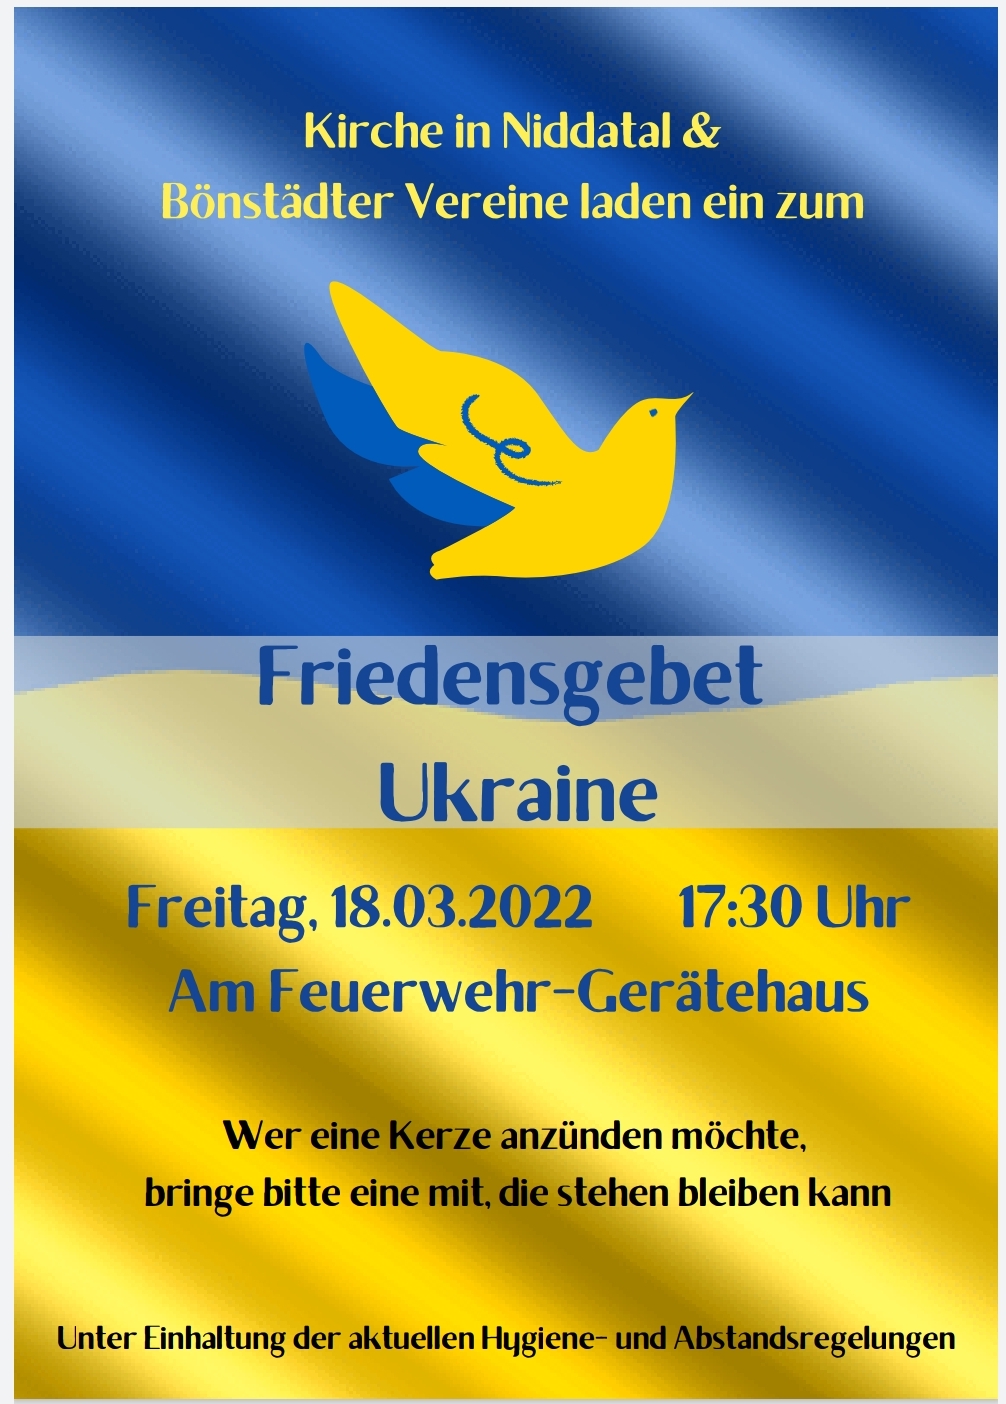 Friedensgebet Ukraine am 18.03.2022